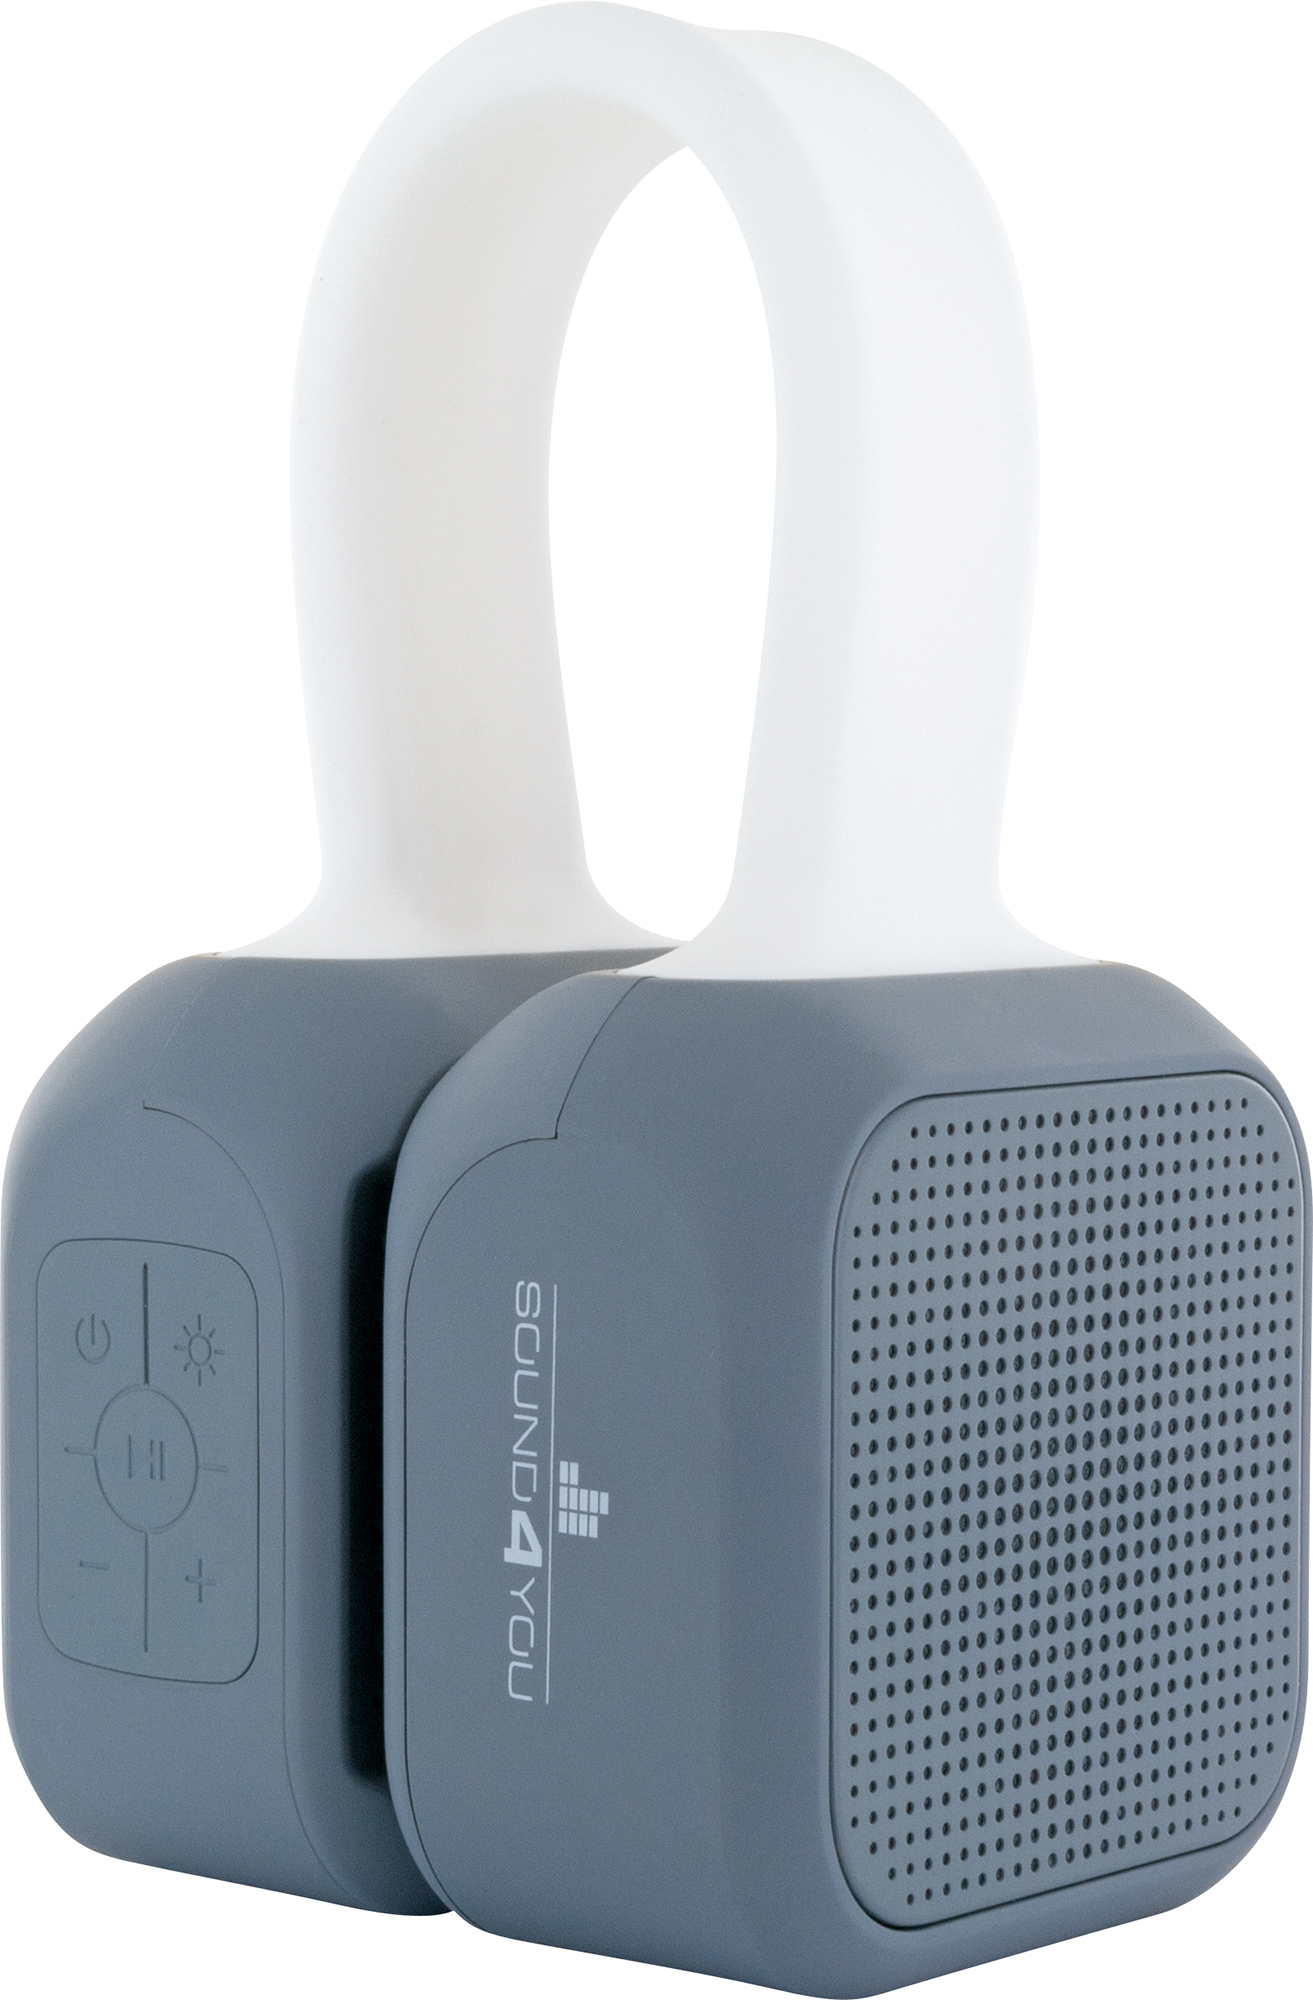 SCHWAIGER -661699- Bluetooth Stereo (Stereo, Weiß/Grau) Lautsprecher